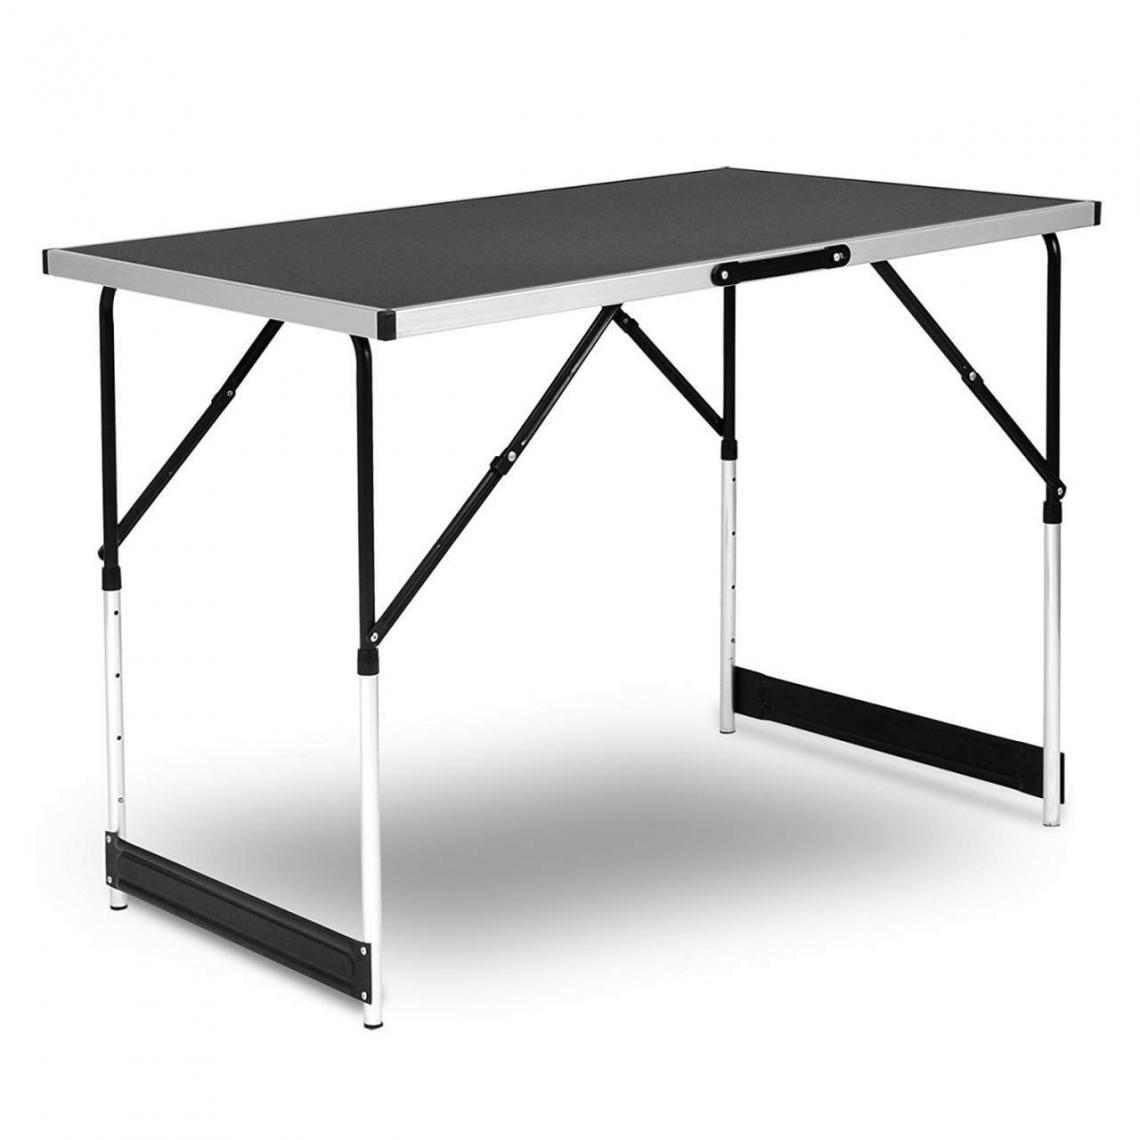 Helloshop26 - Table de jardin camping polyvalente pliante réglable 100 x 60 cm noir 19_0000970 - Tables de jardin